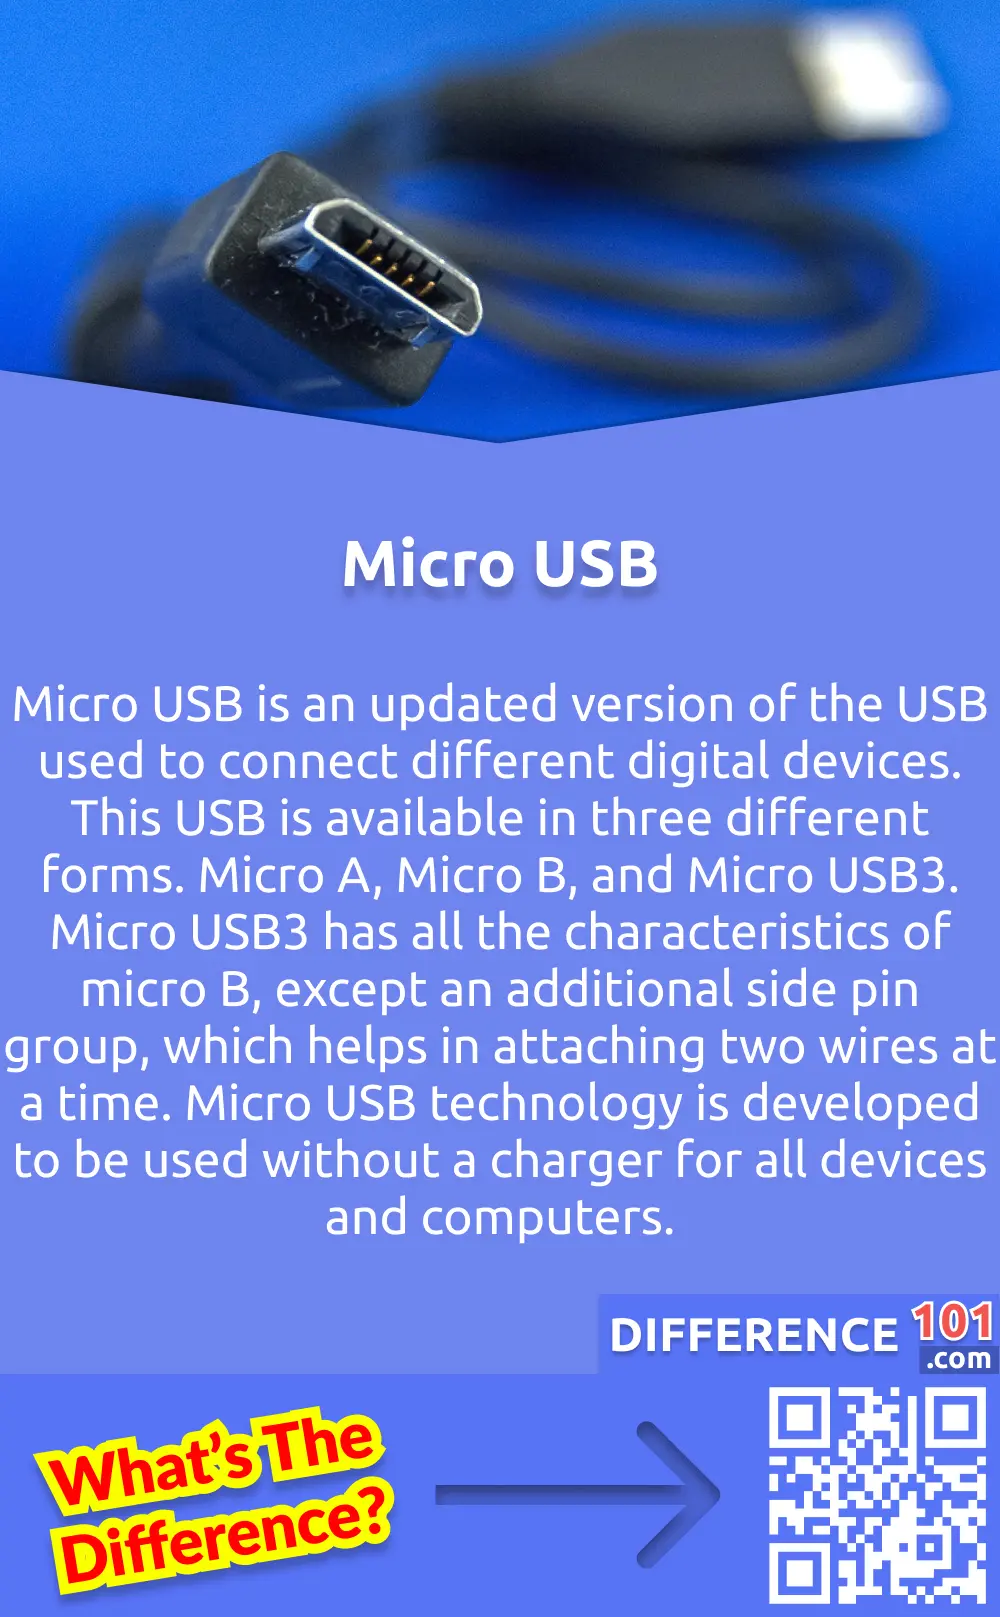 Na co se používají mikros?